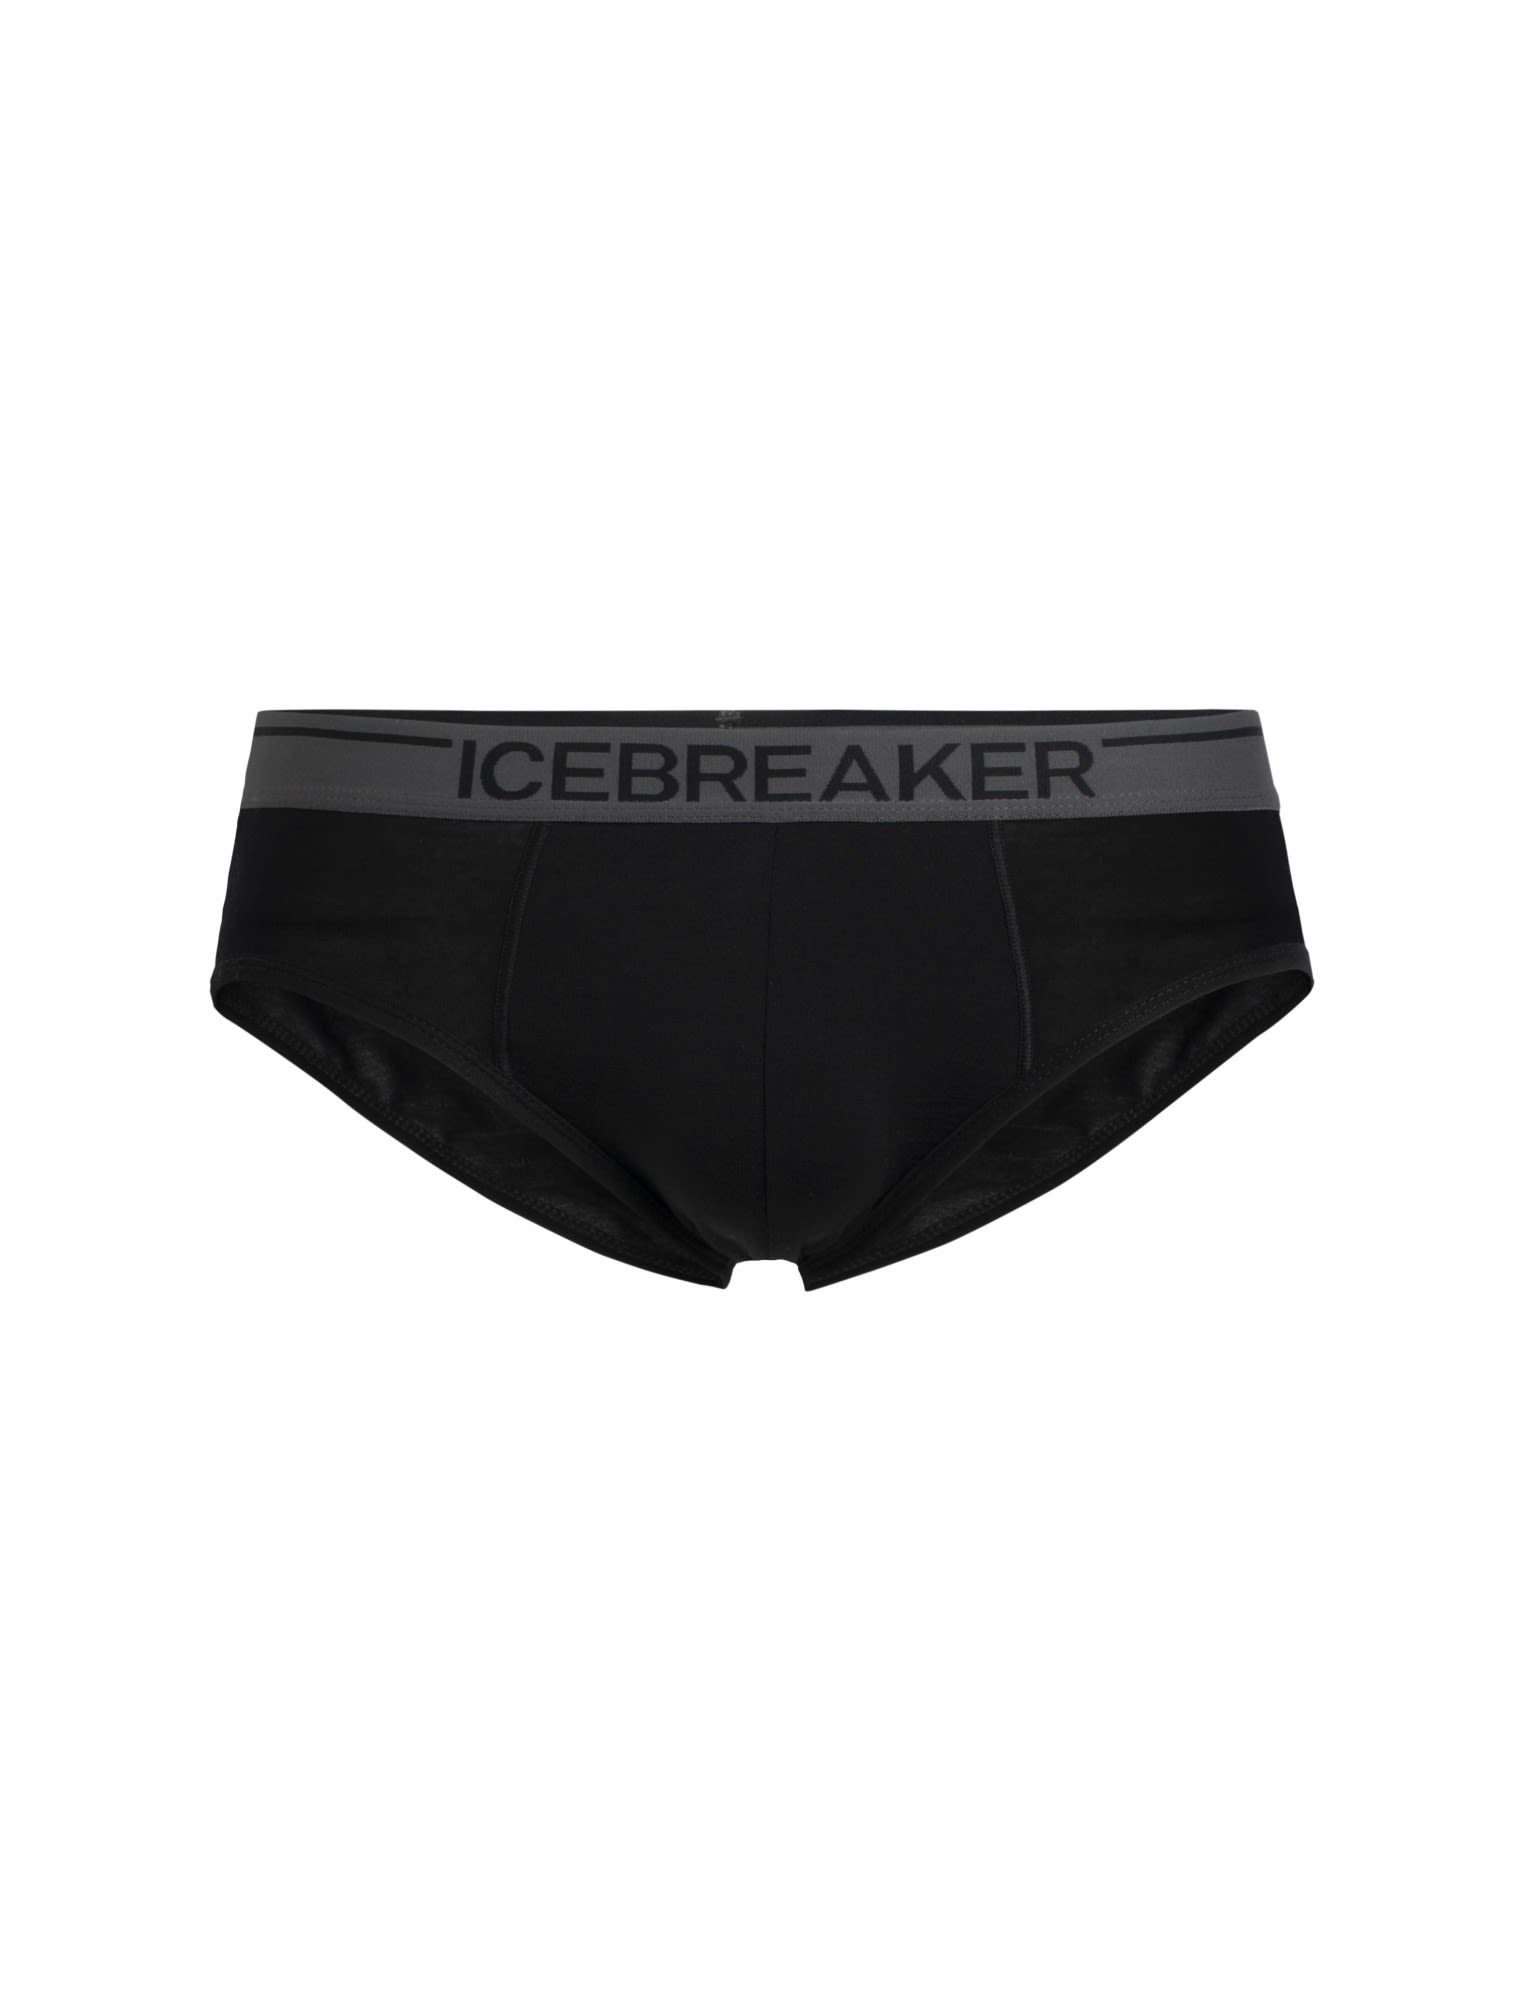 Icebreaker Lange Anatomica Herren Icebreaker Briefs Kurze Black M Unterhose